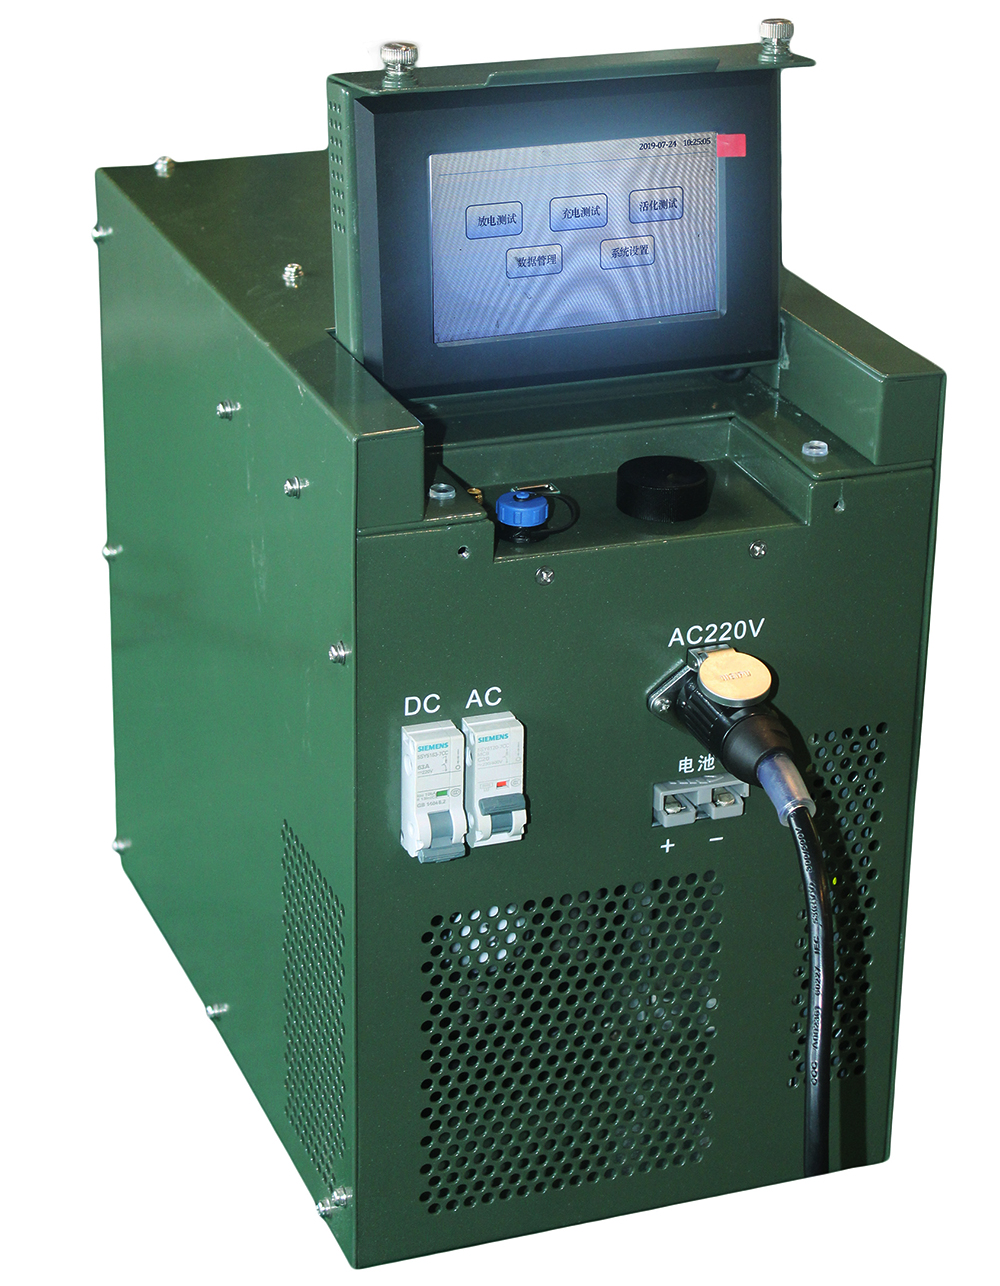 DCLT-4805CT 蓄电池充放电修复仪 满足铅酸、锂电池12V、24V、48V启动电池的充放电修复